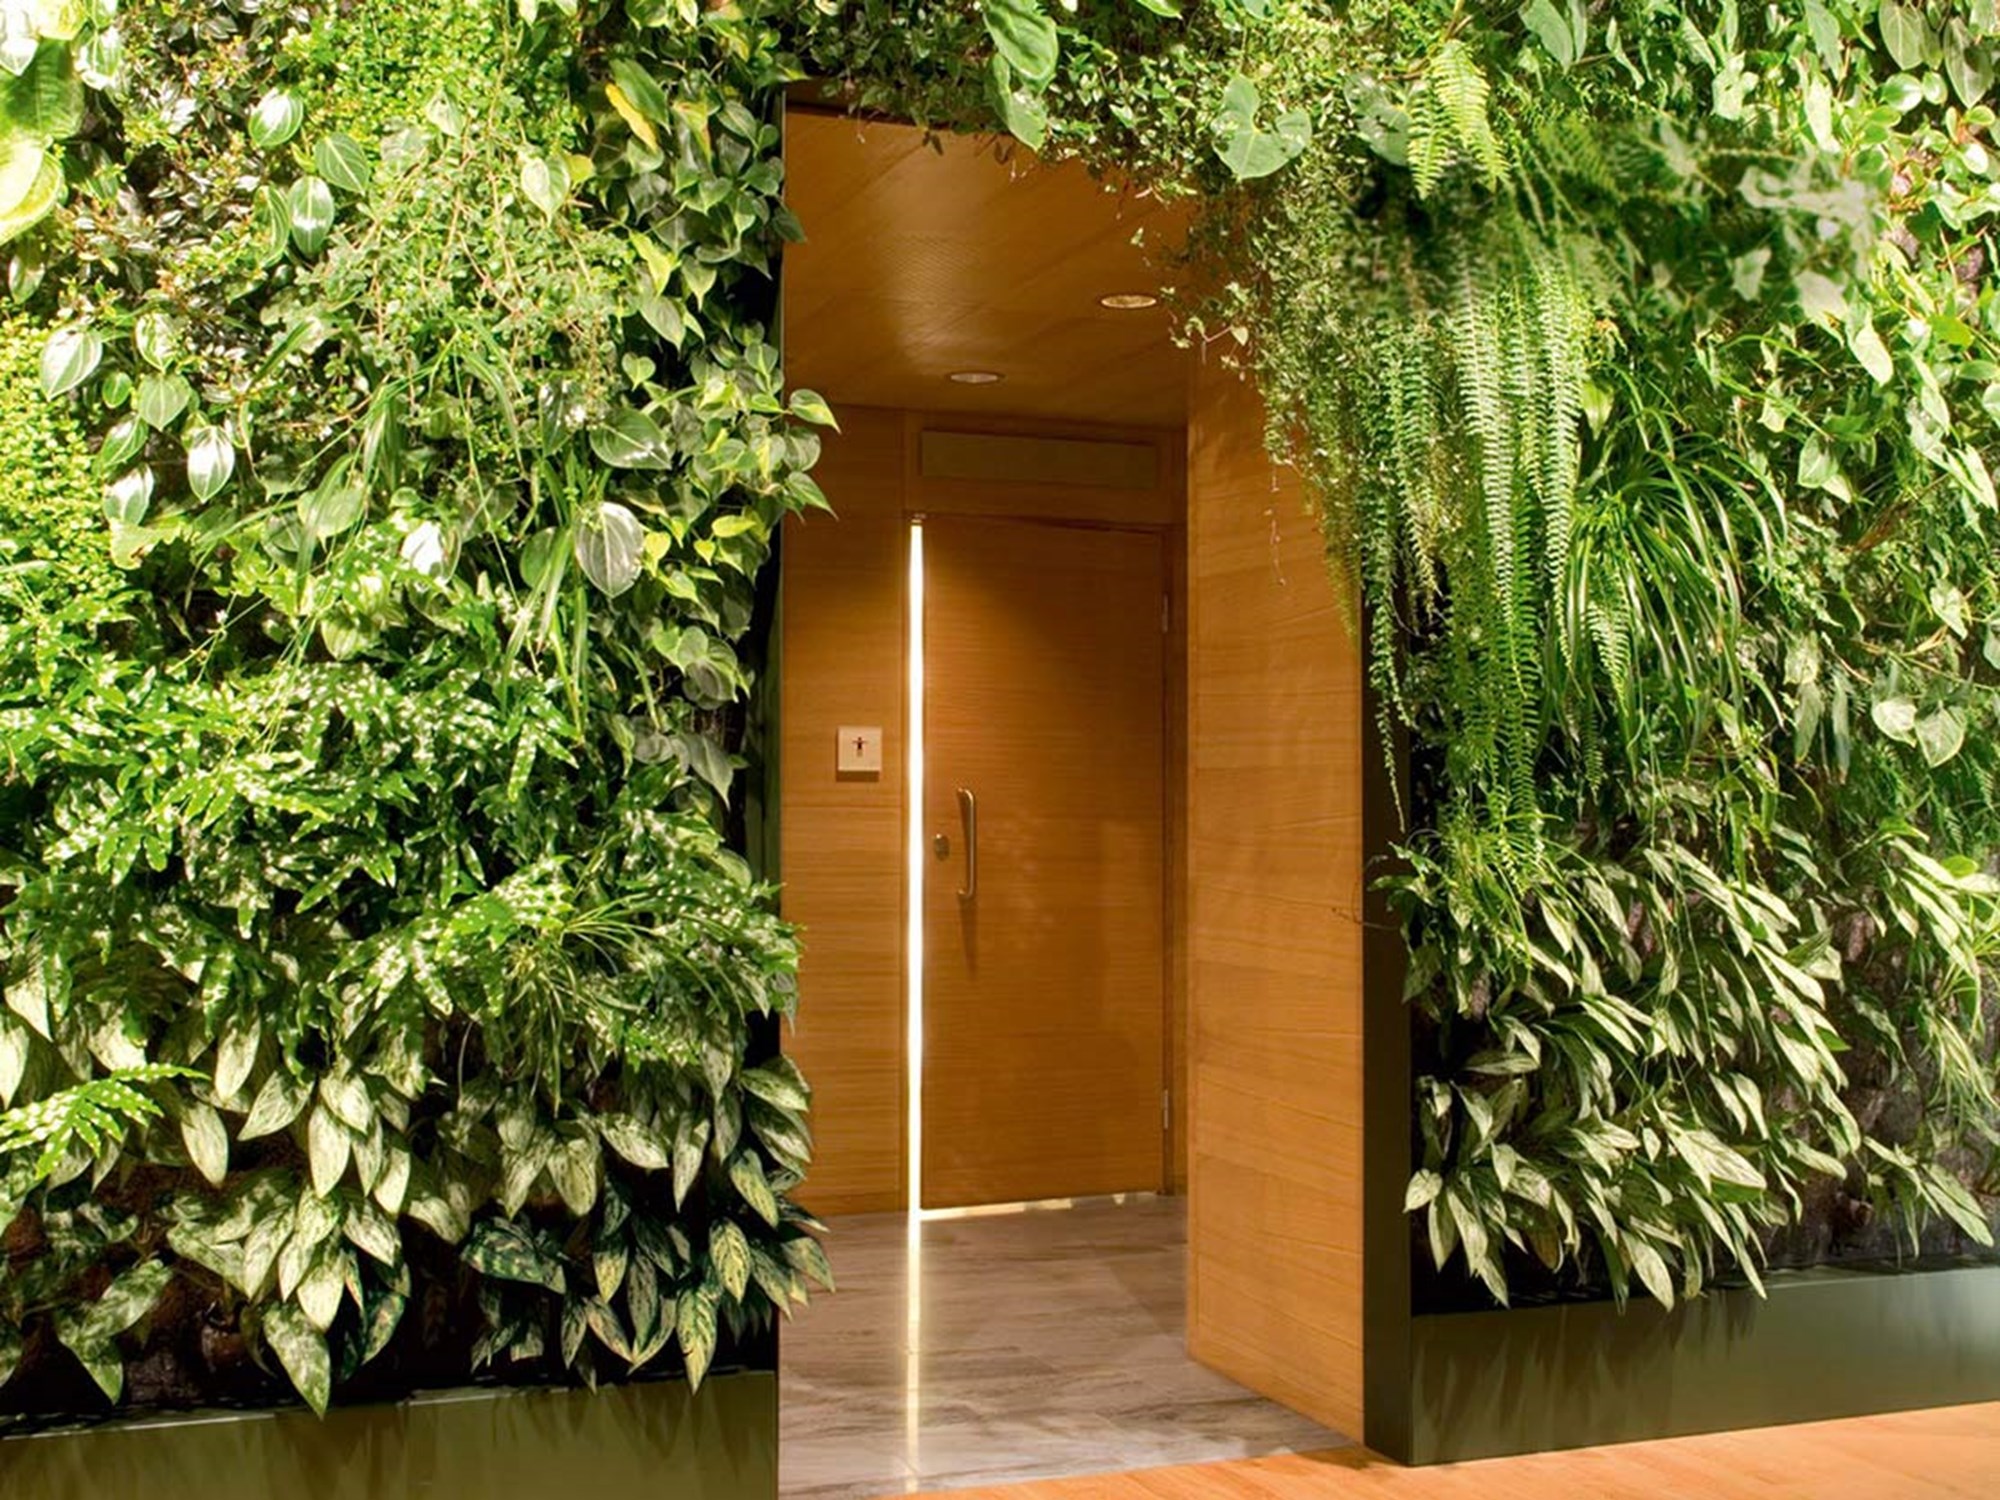 Toalettdörr i Talk hotell Väggar fyllda med växter